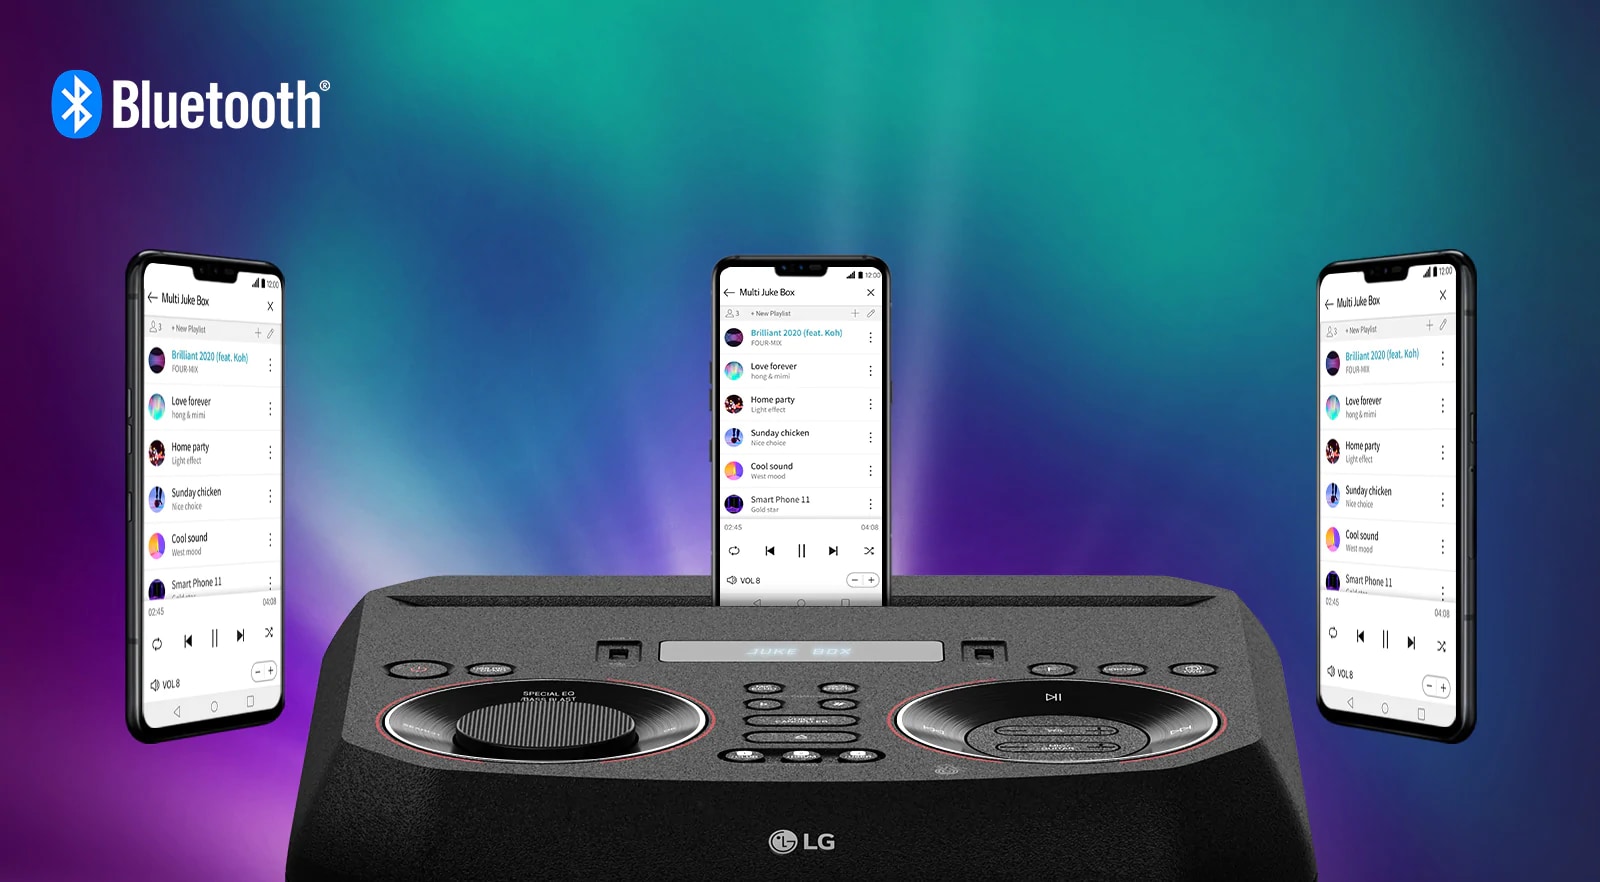 Comparte el control de la playlist desde una App